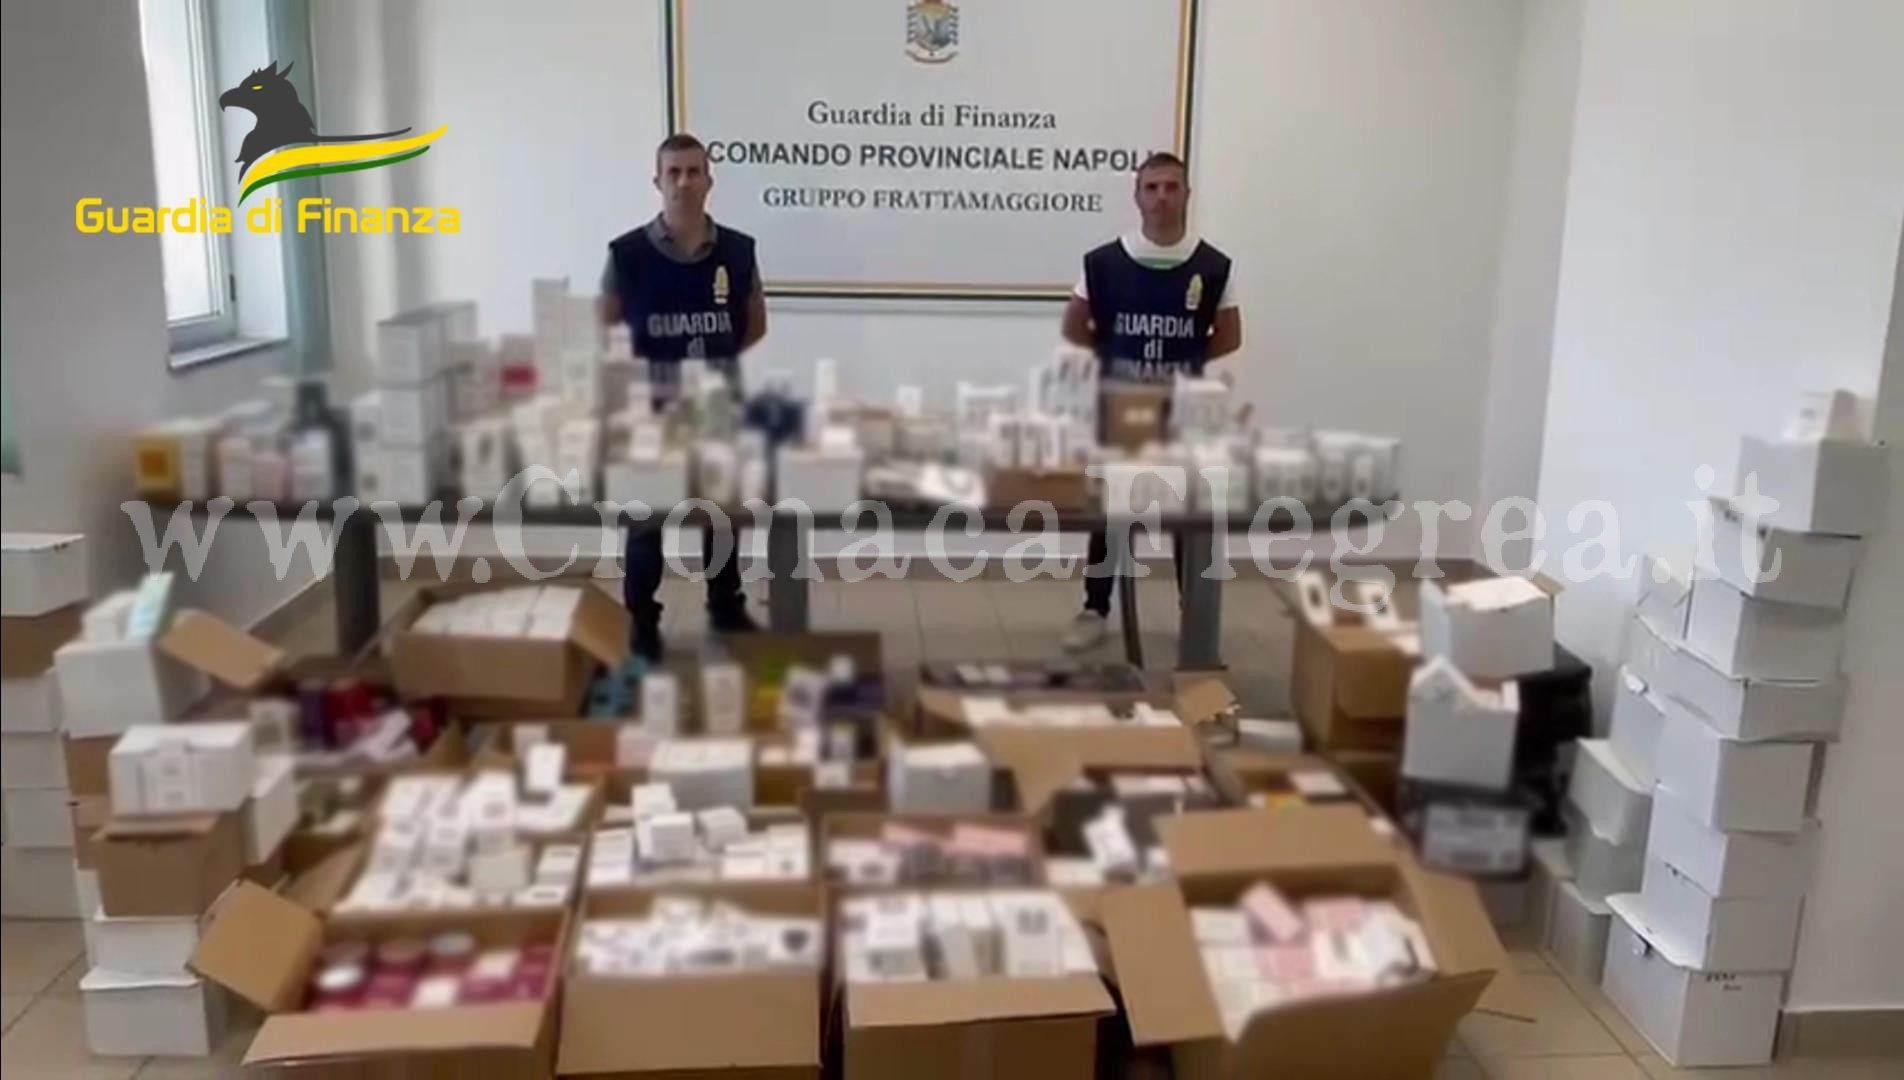 L’OPERAZIONE/ Profumi falsi, sequestrati oltre 28mila prodotti contraffatti